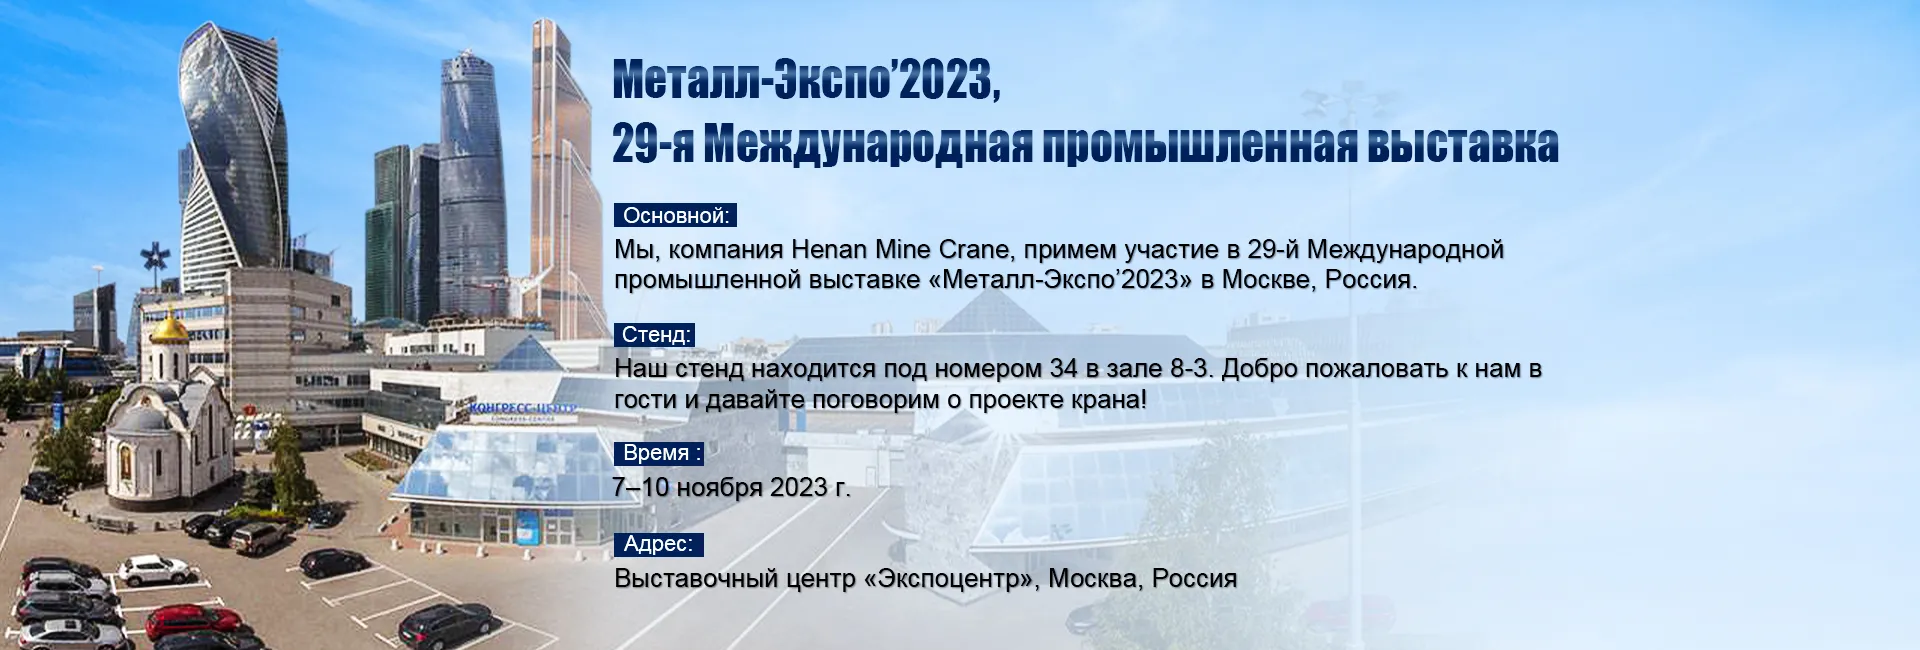 компания Henan Mine Crane, примем участие в «Металл-Экспо’2023» в Москве,Россия.